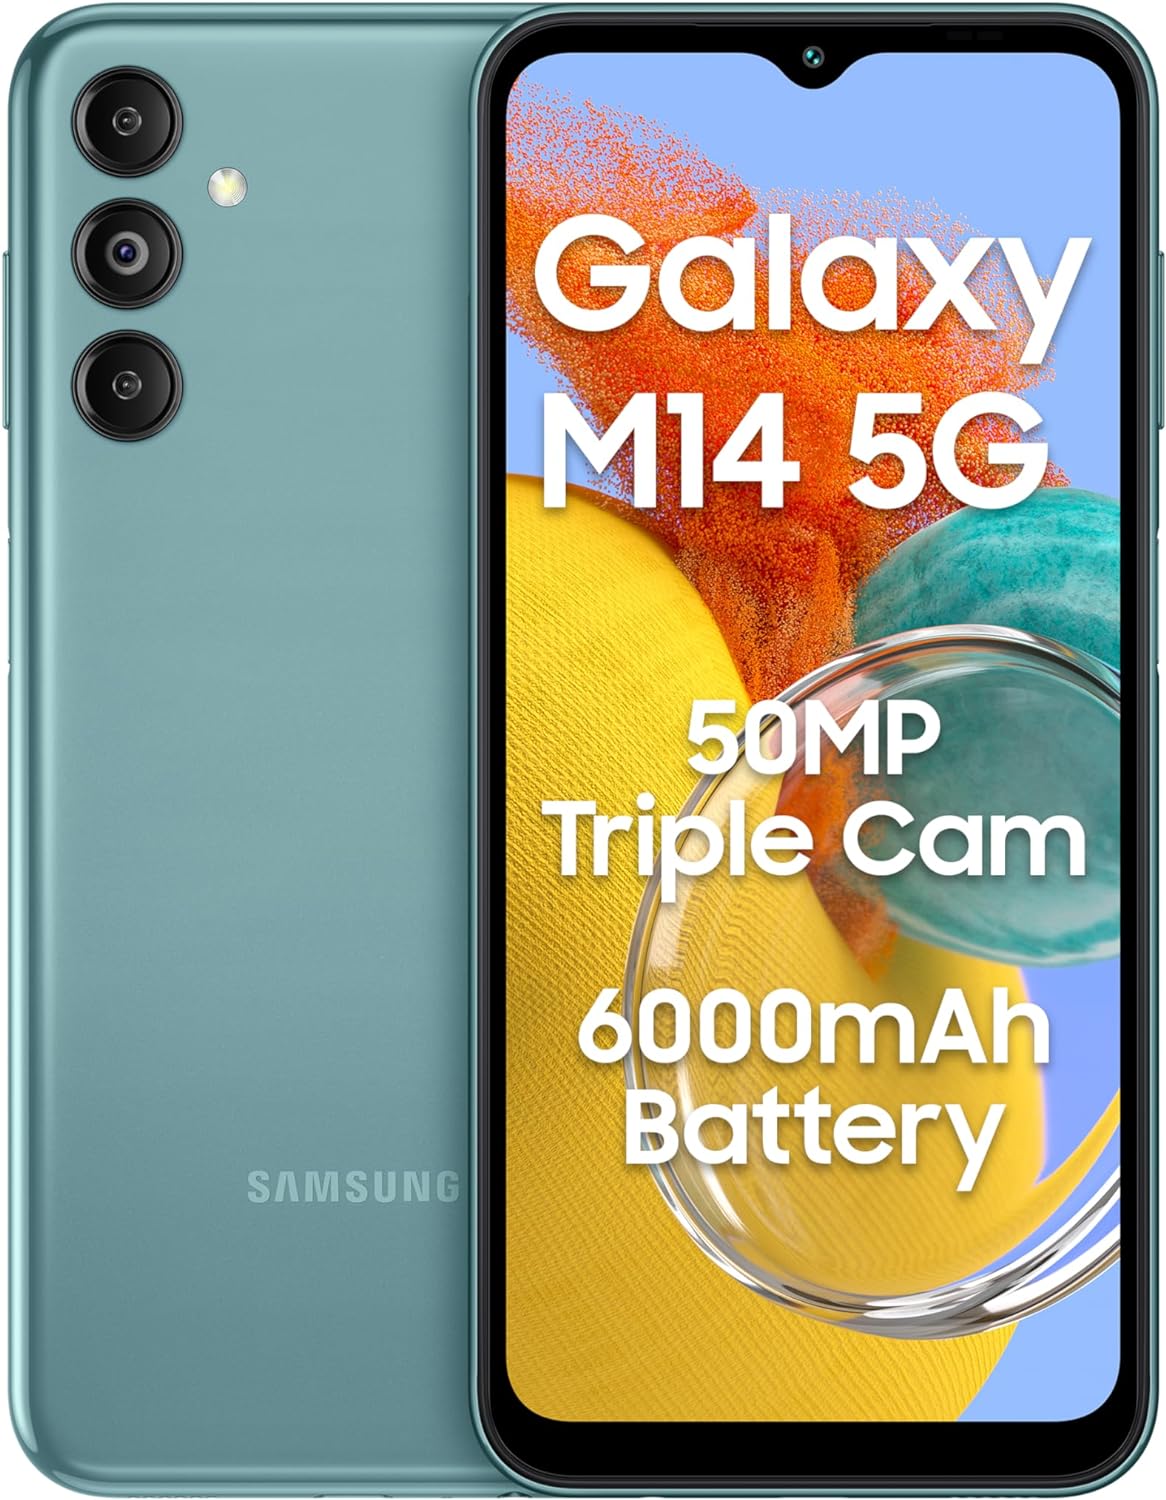 Điện thoại Samsung Galaxy M14 5G (4GB/128GB) - Hàng chính hãng